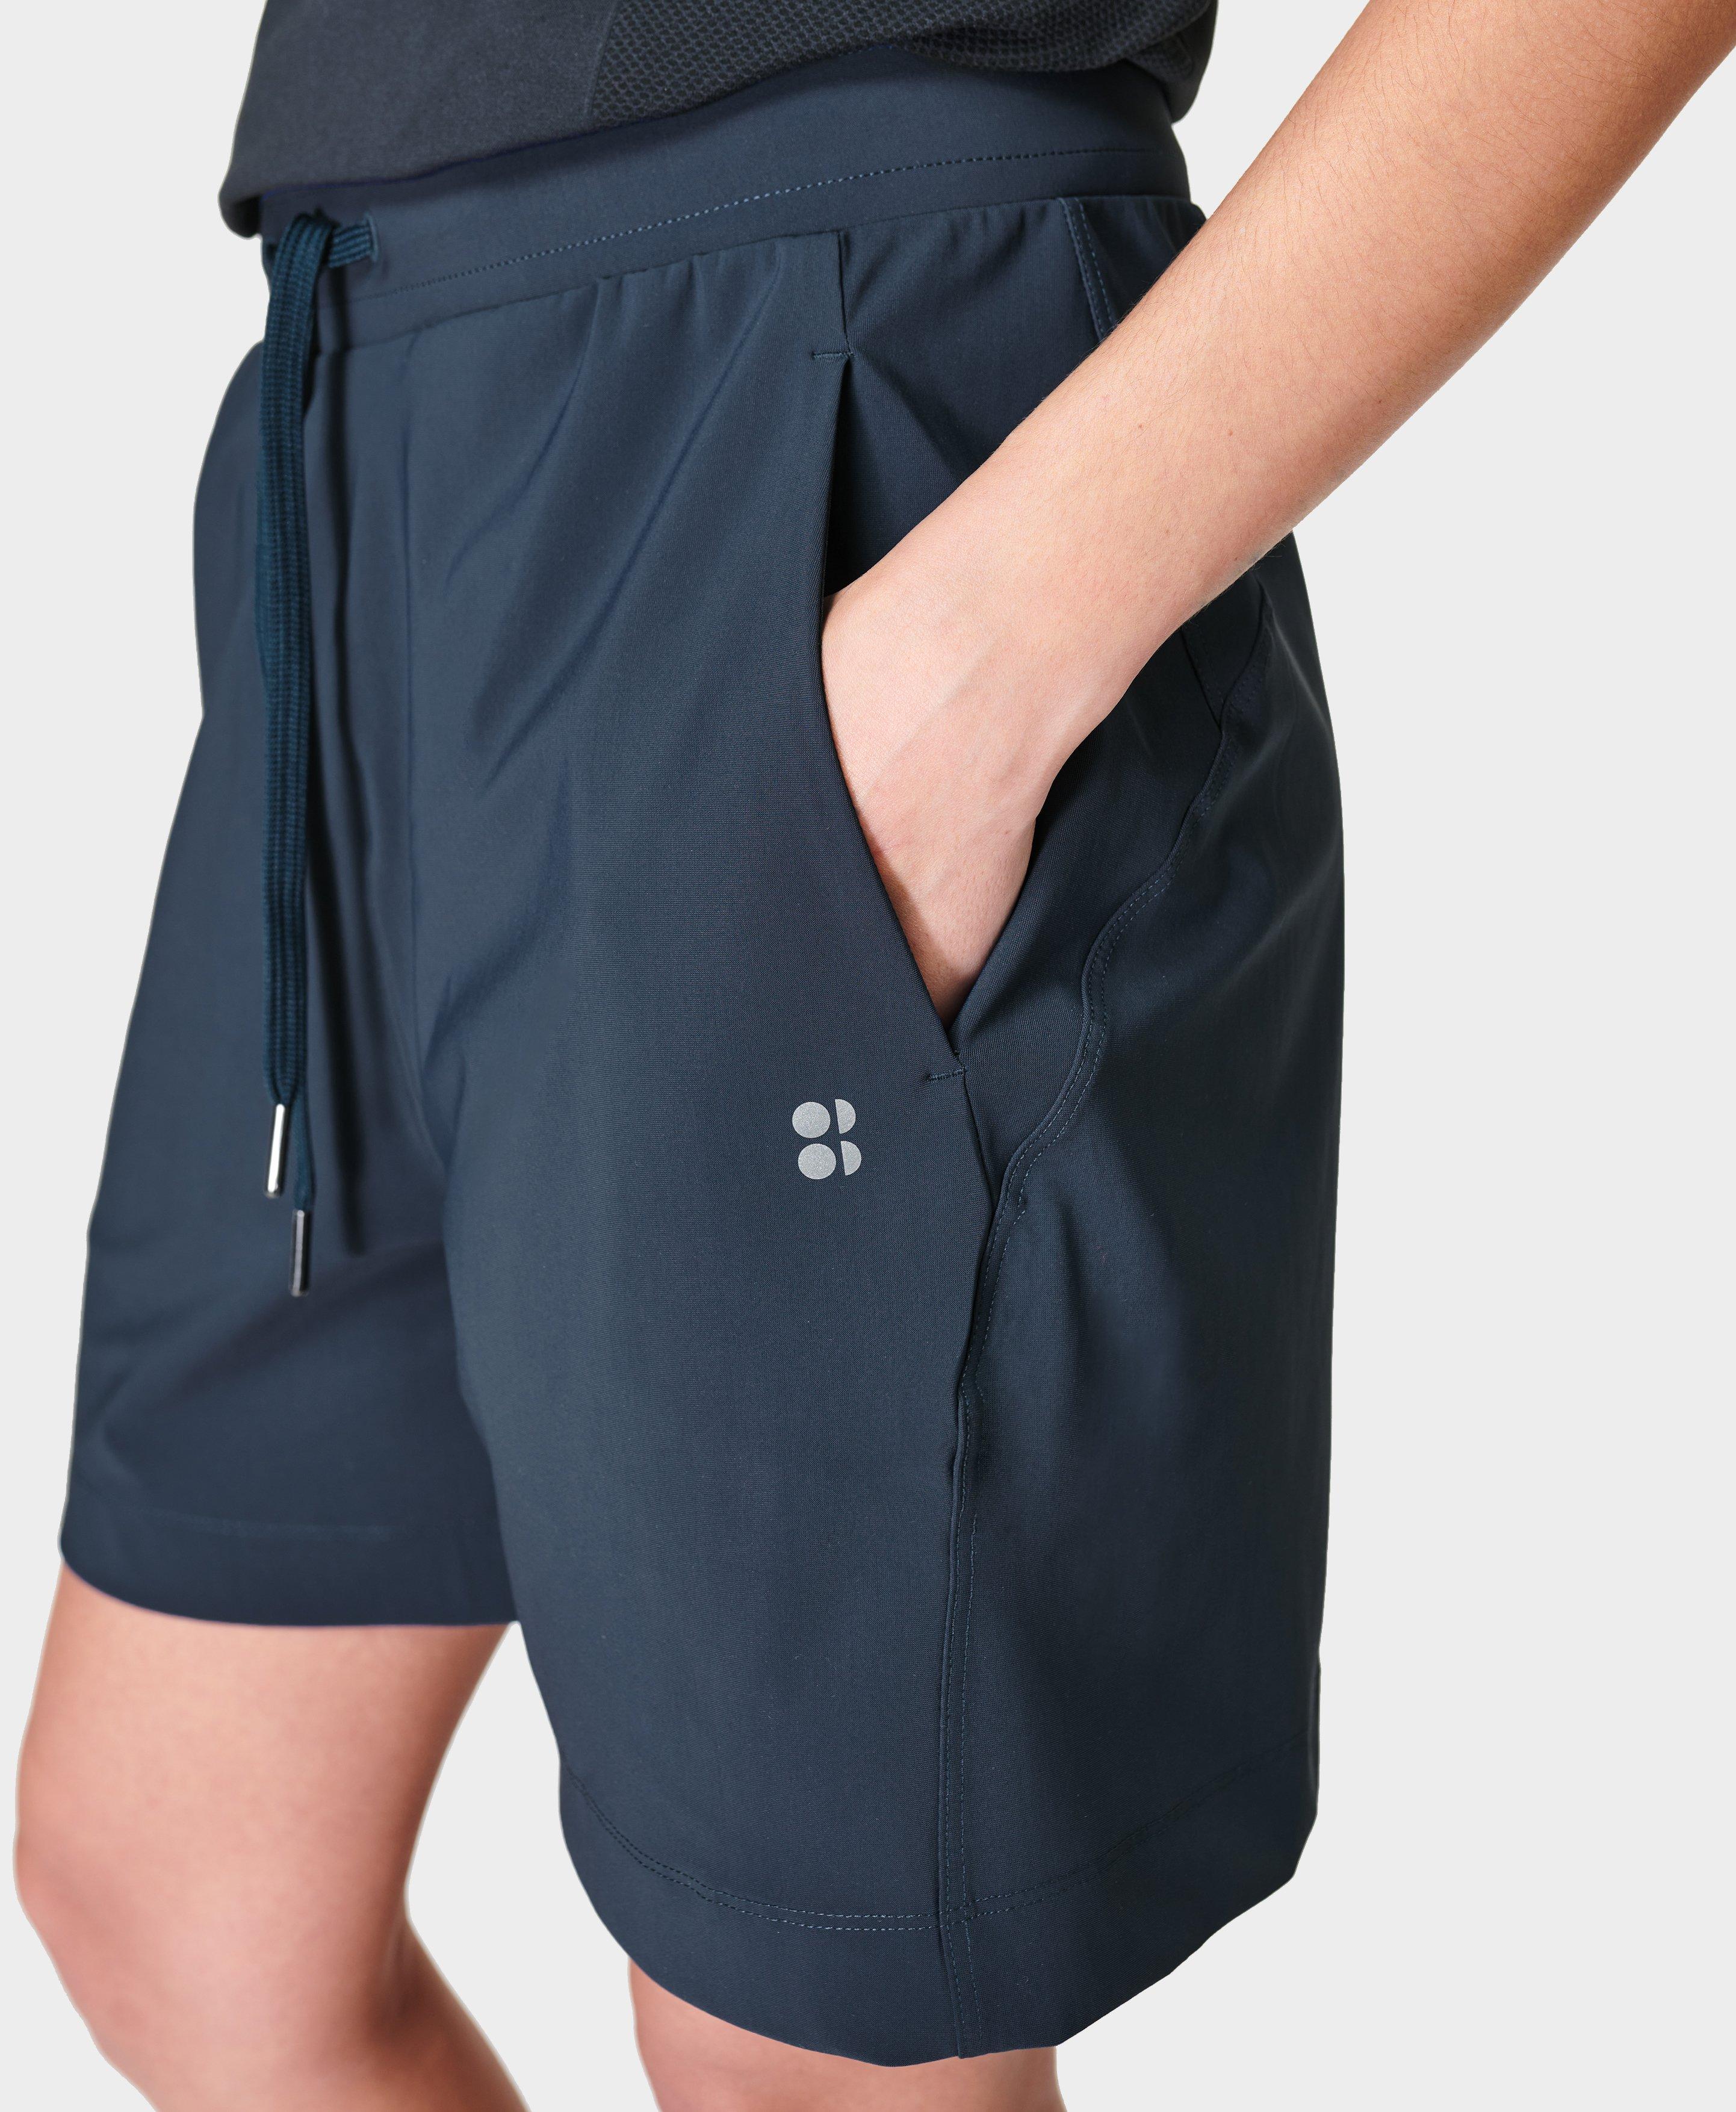 Explorer Shorts - Navy Blue, Women's Shorts + Skorts